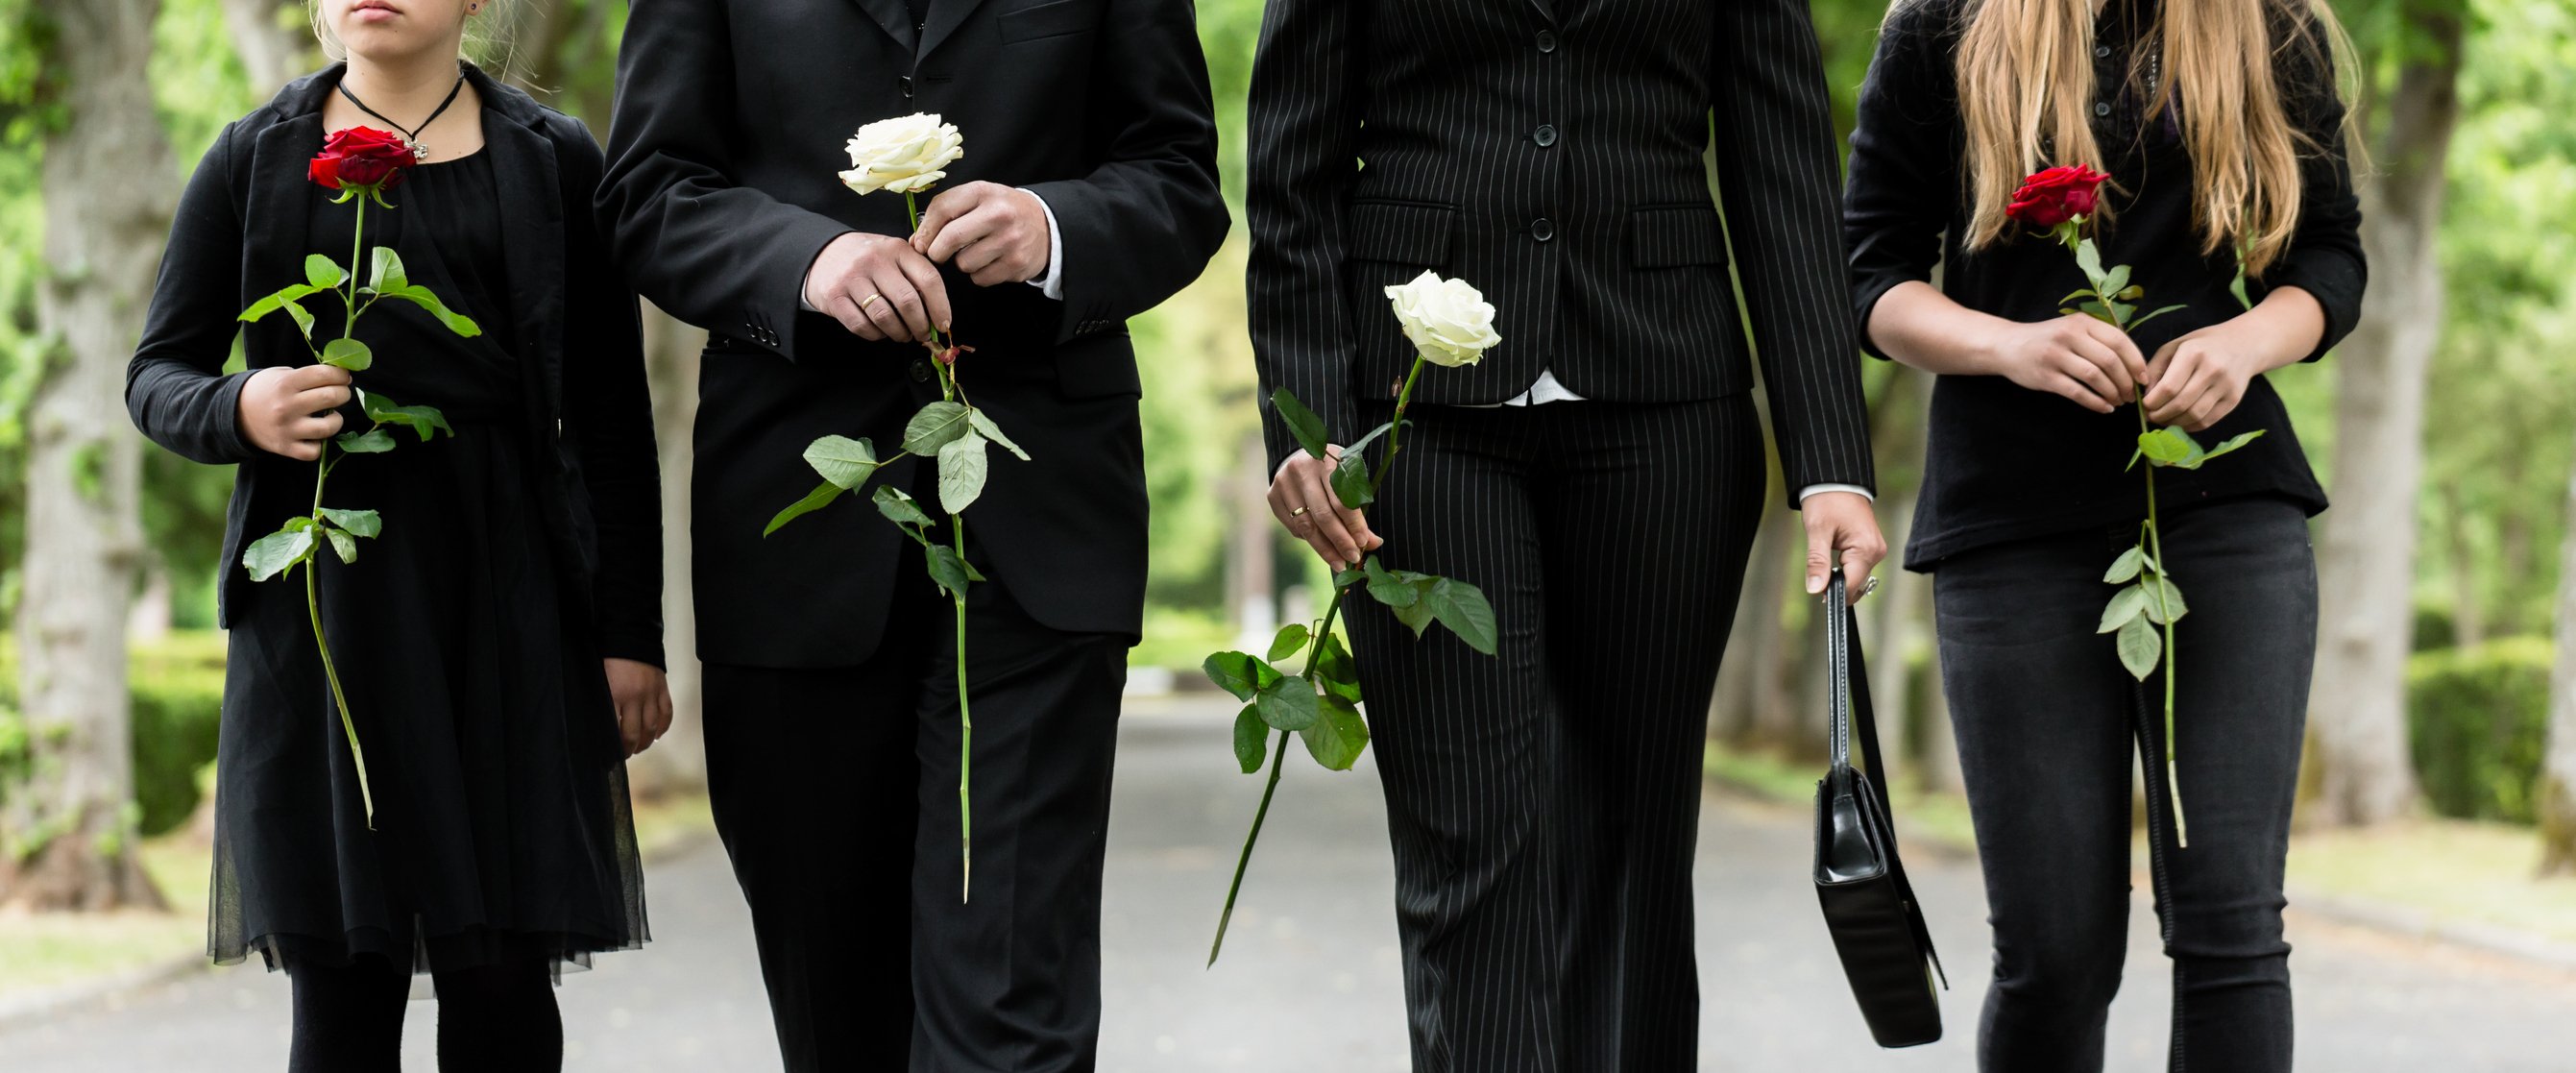 Die Familie hält Rosen, während sie während einer Beerdigung hinter einem Sarg spazieren geht. I Quelle: Getty Images